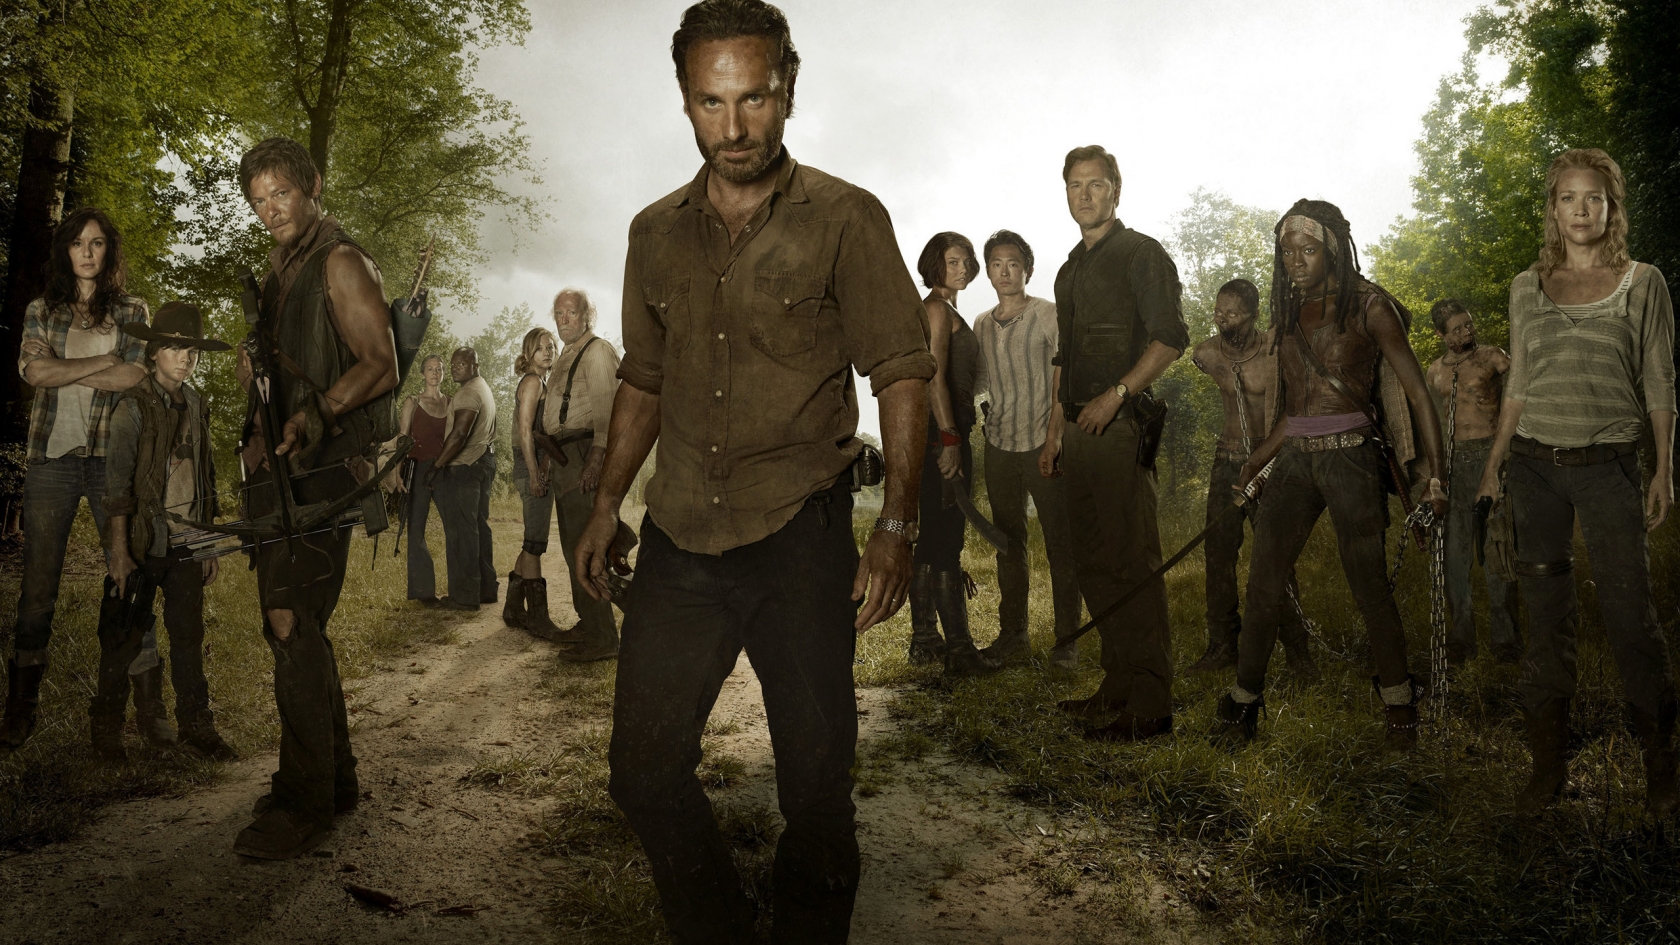 The Walking Dead Full Cast for 1680 x 945 HDTV resolution